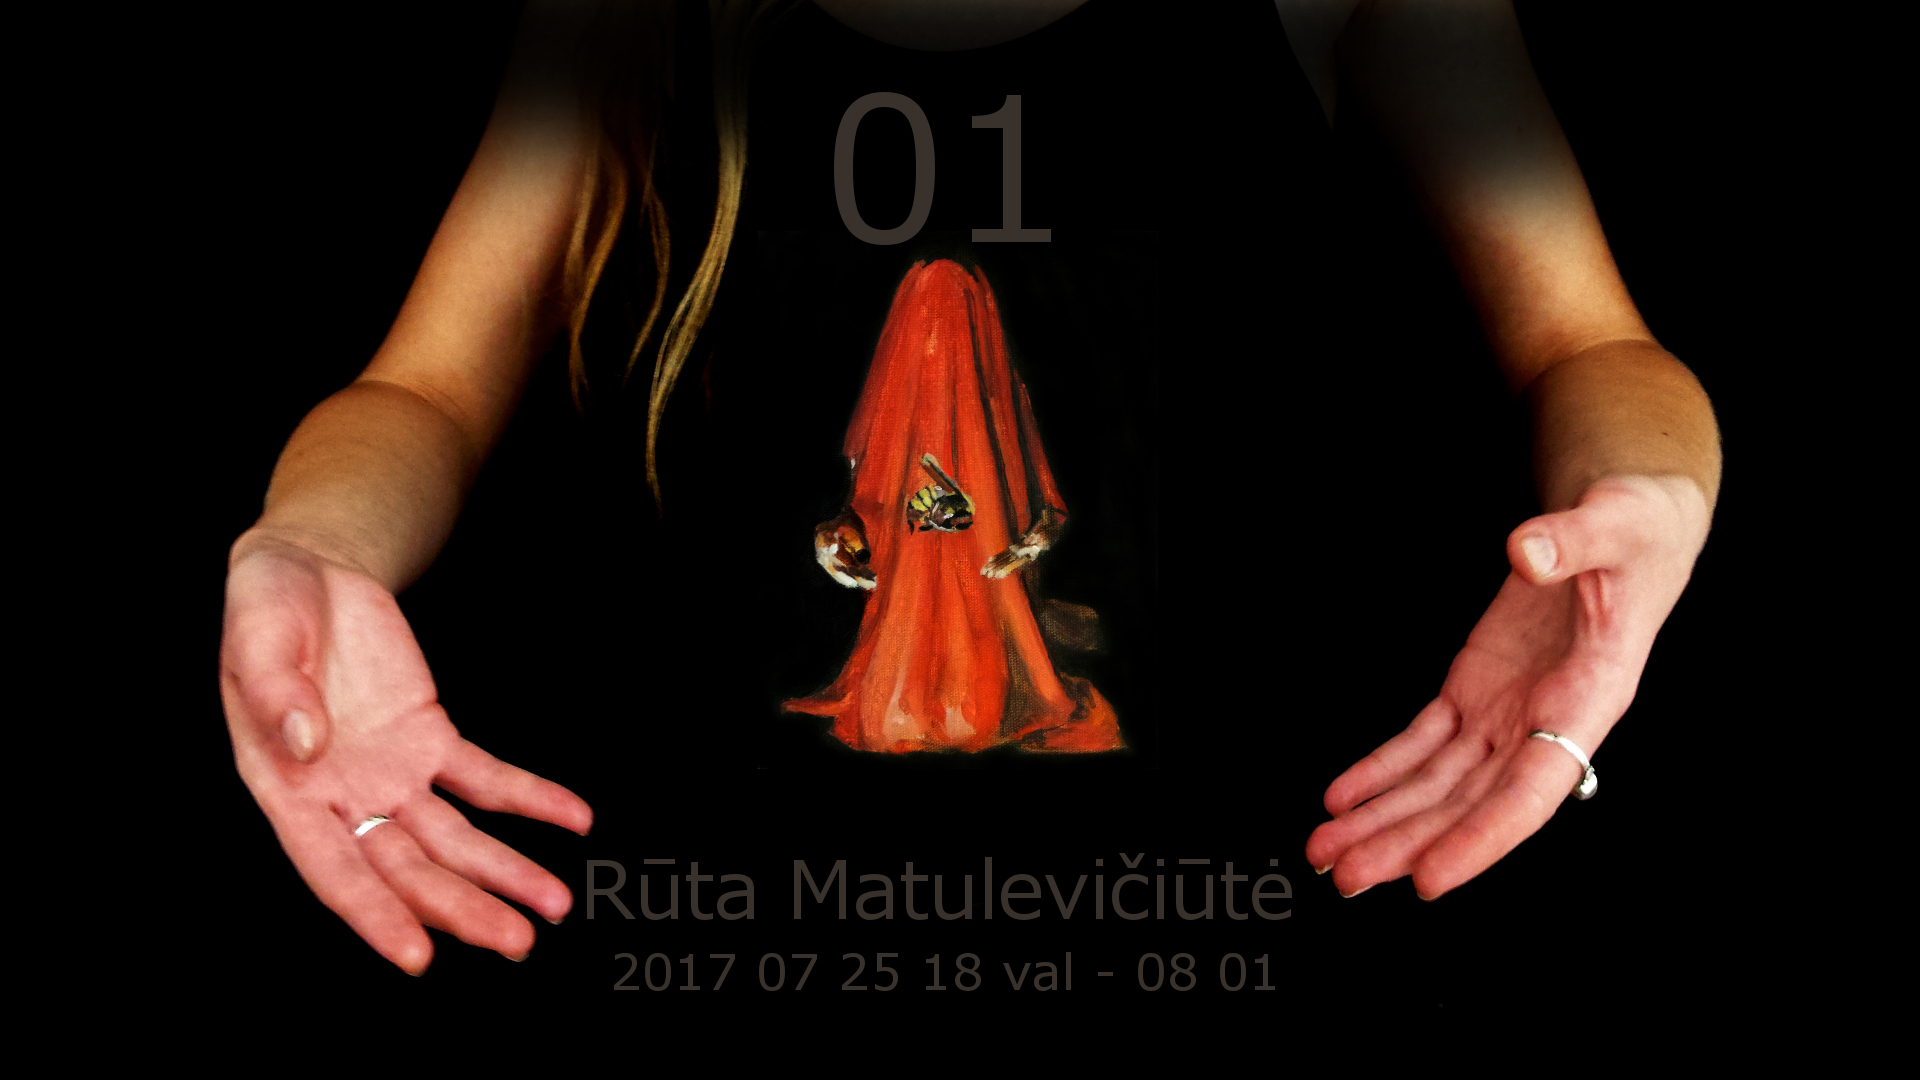 01 Art show by Ruta Matuleviciute